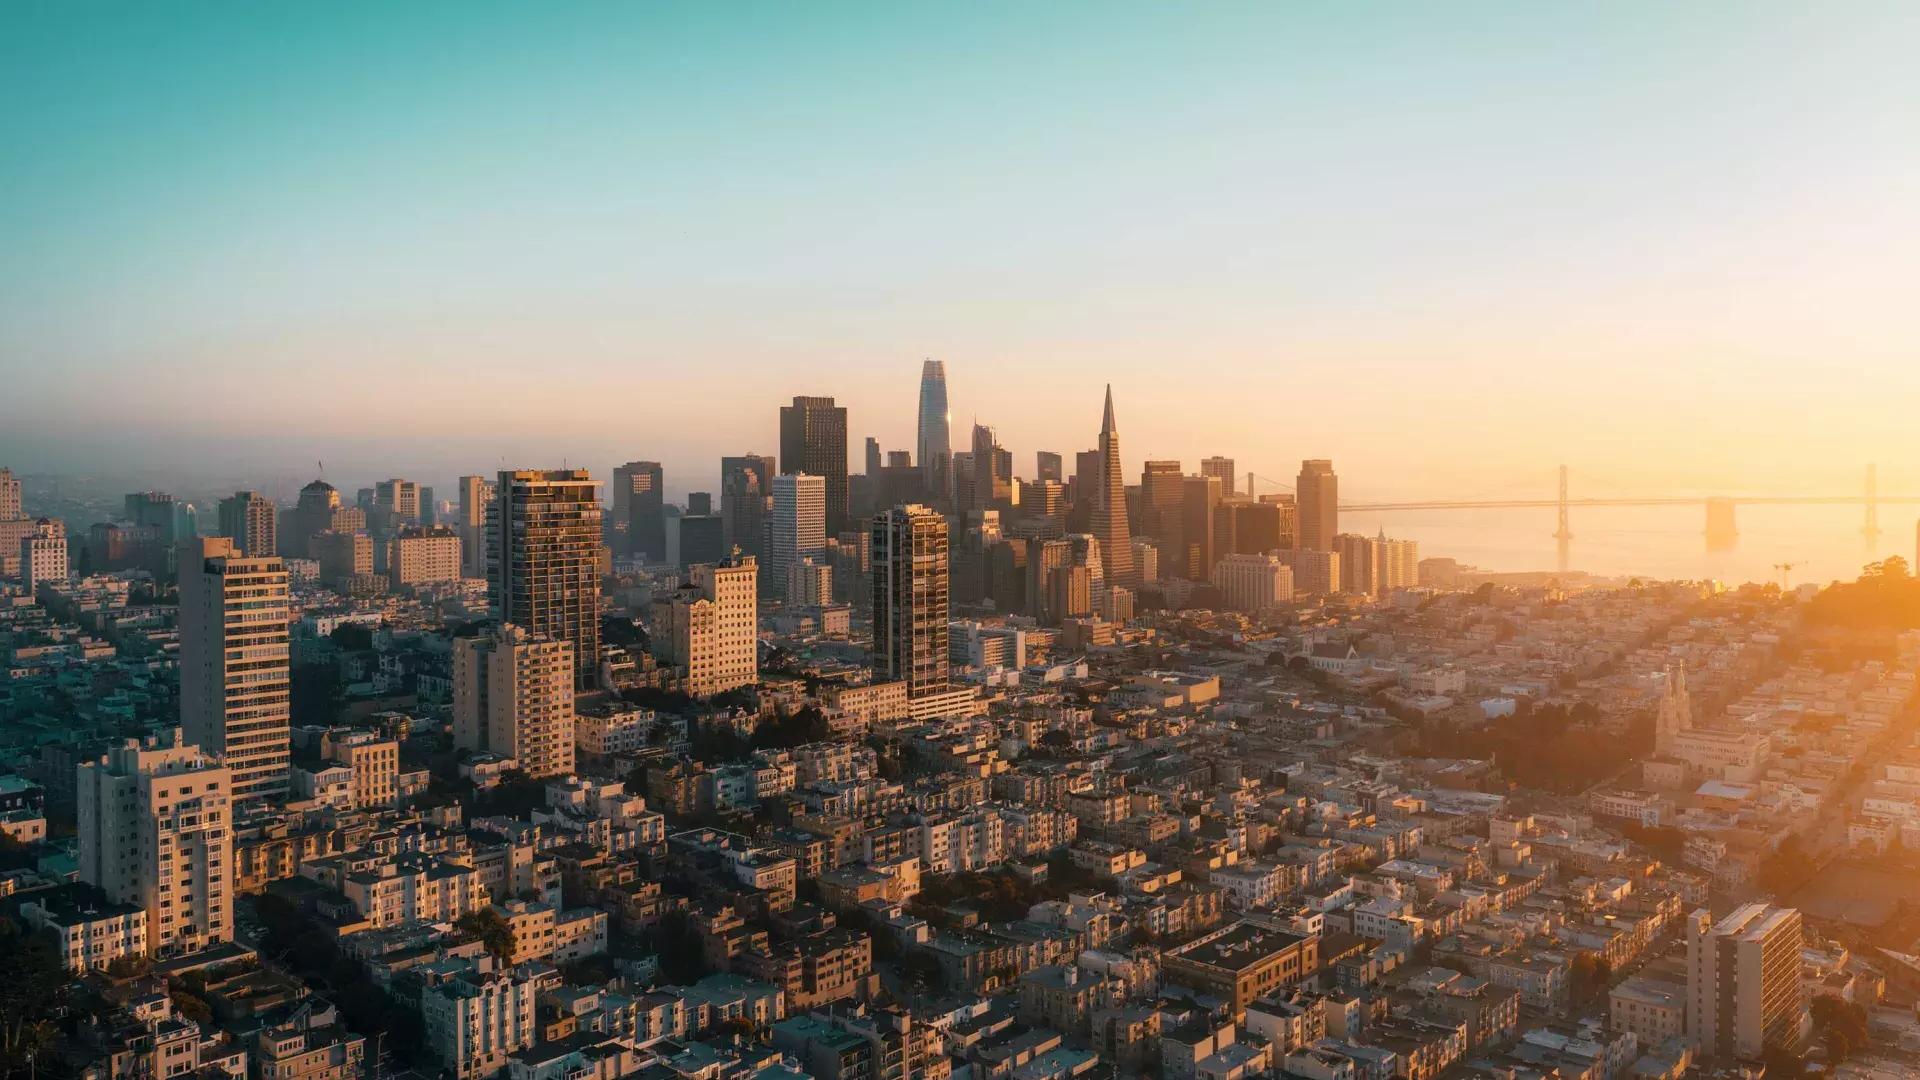 Lo skyline di San Francisco è visto dall'alto in una luce dorata.